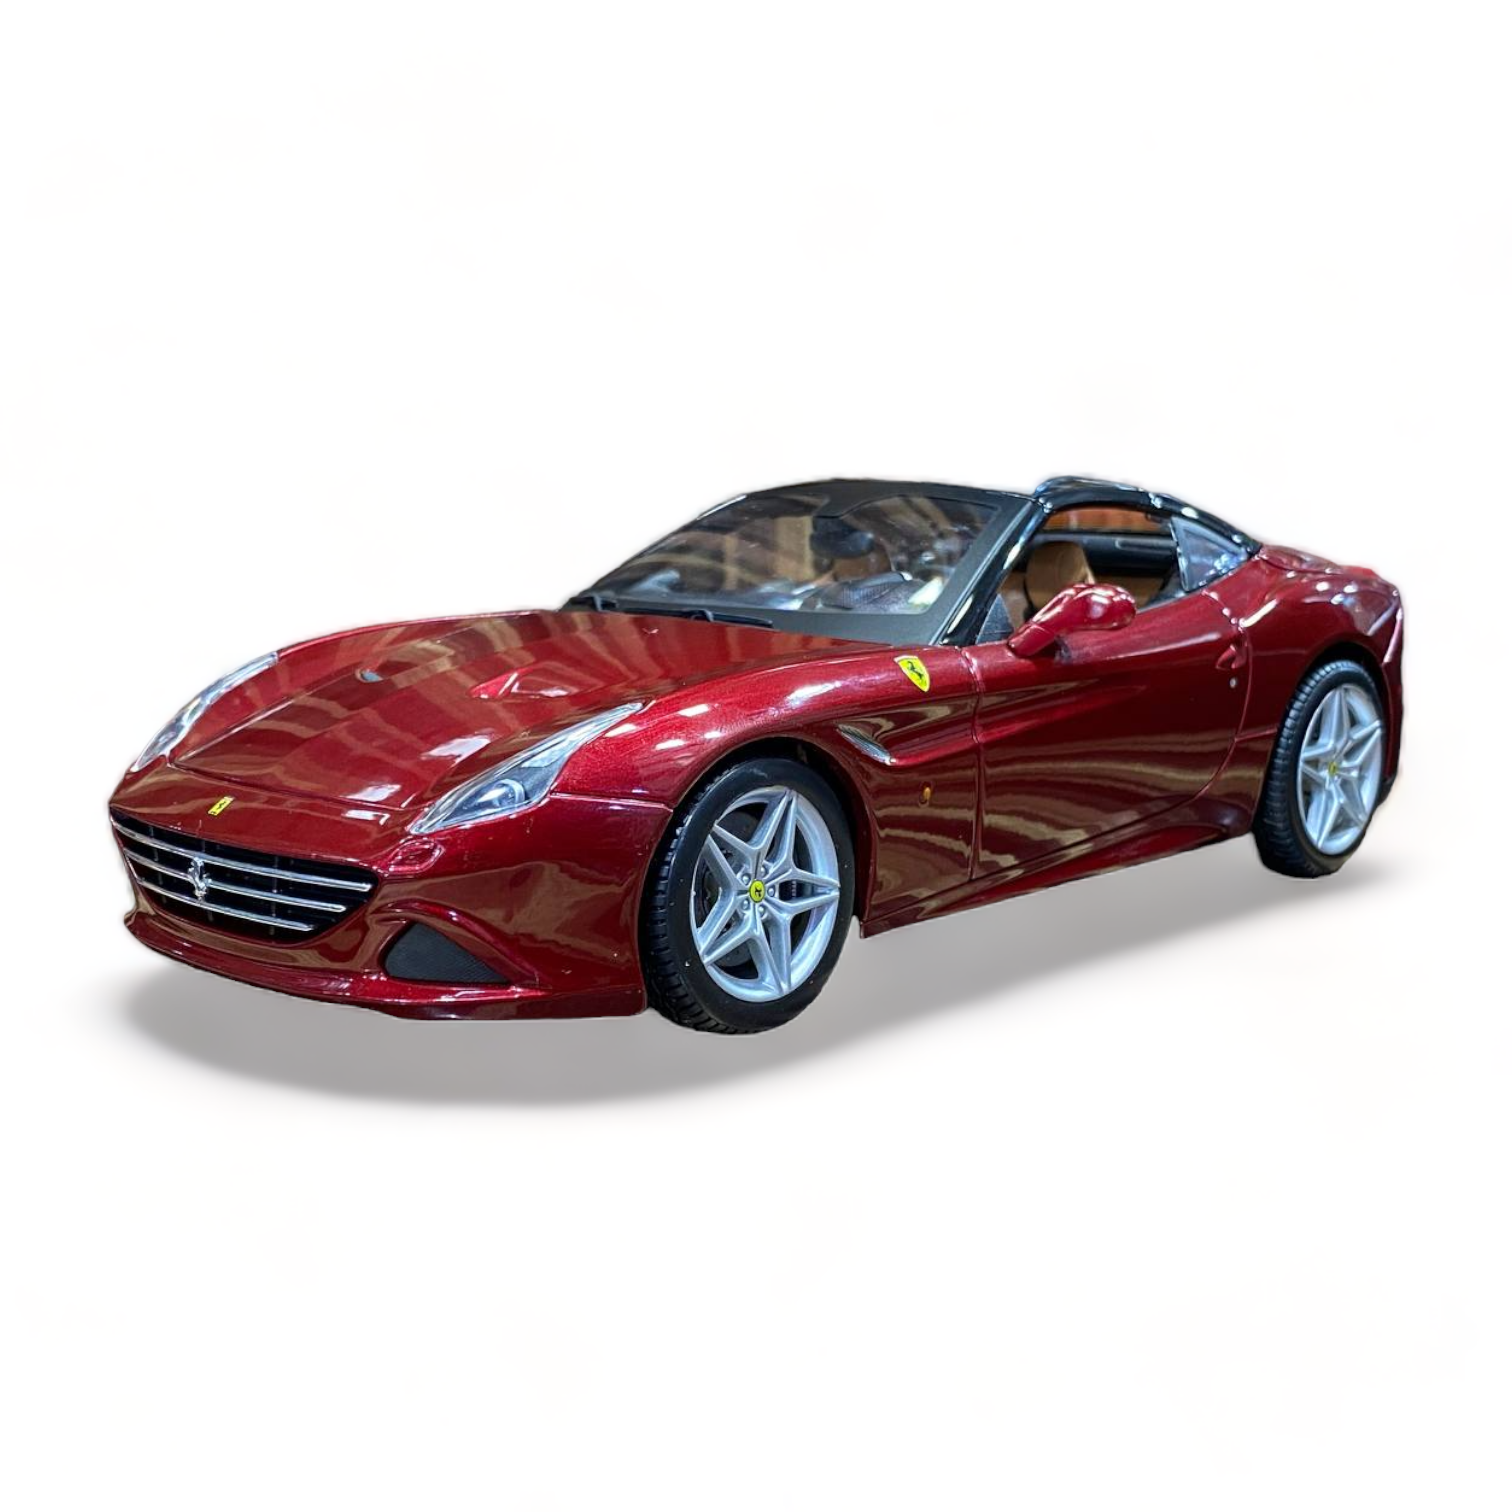 1/18 Diecast Ferrari California T Red "Signature Series" Bburago Scale Model Car|Sold in Dturman.com Dubai UAE.